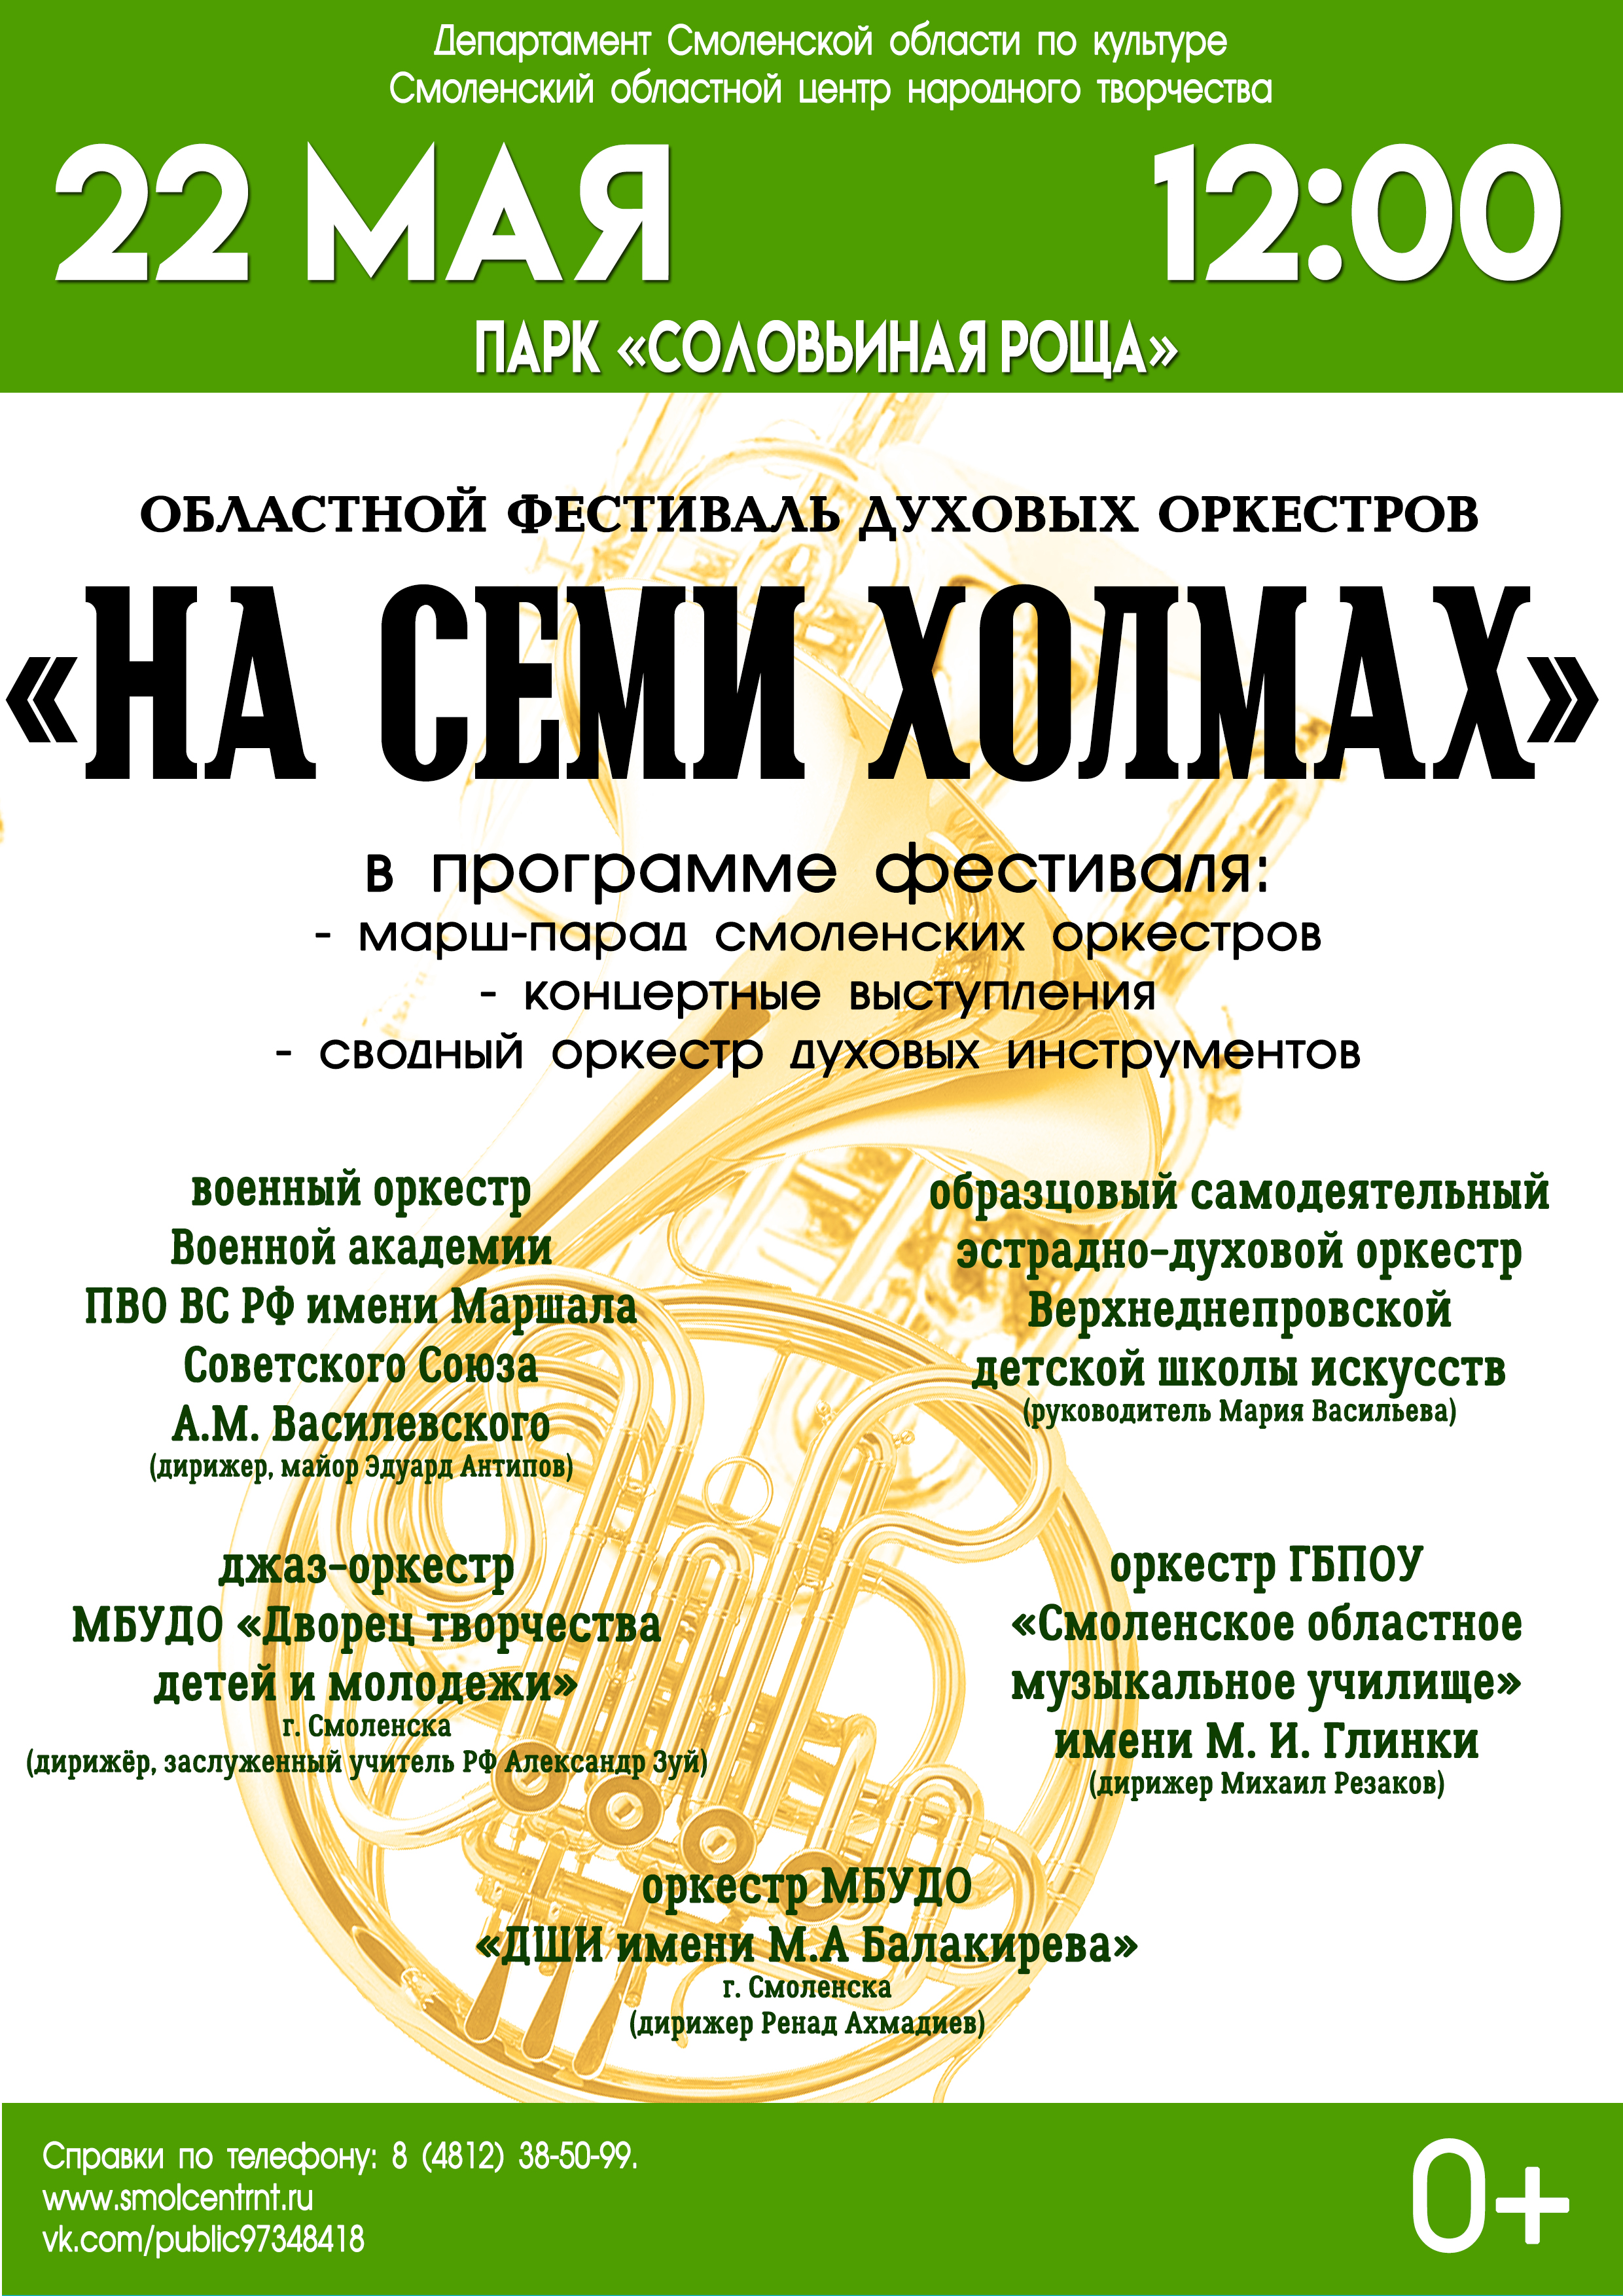 Областной фестиваль духовых оркестров